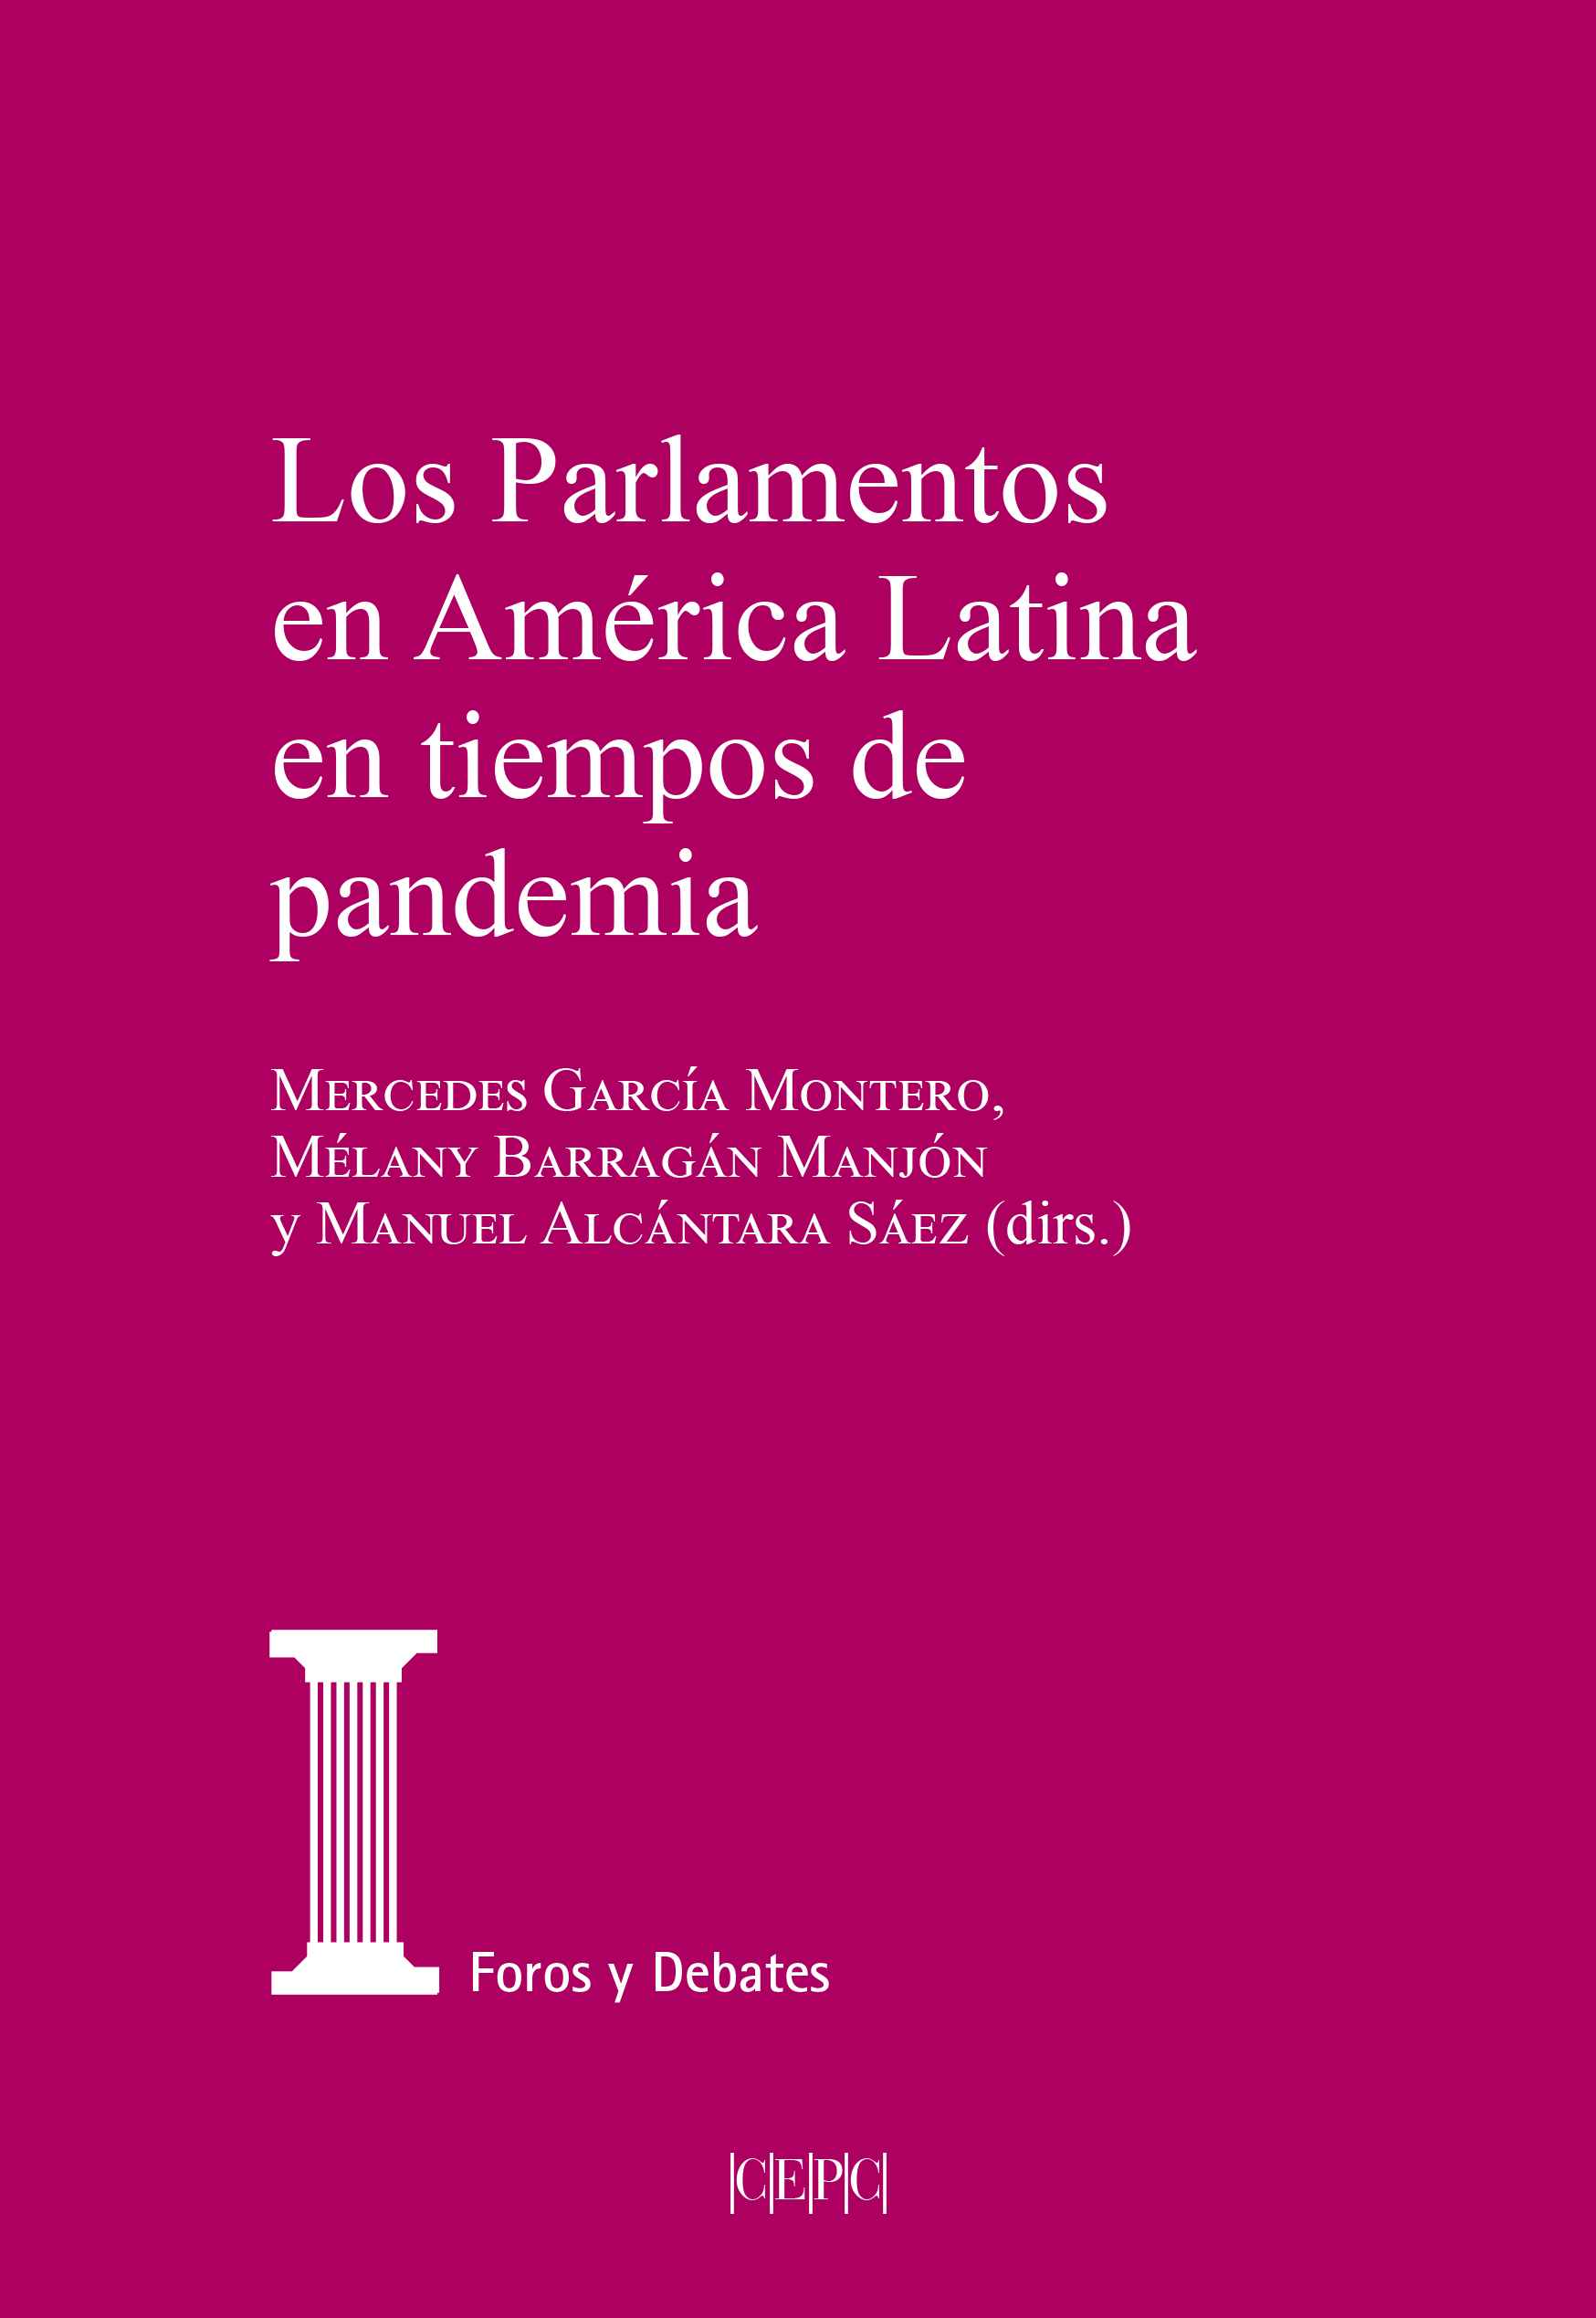 Imagen de portada del libro Los parlamentos en América Latina en tiempos de pandemia